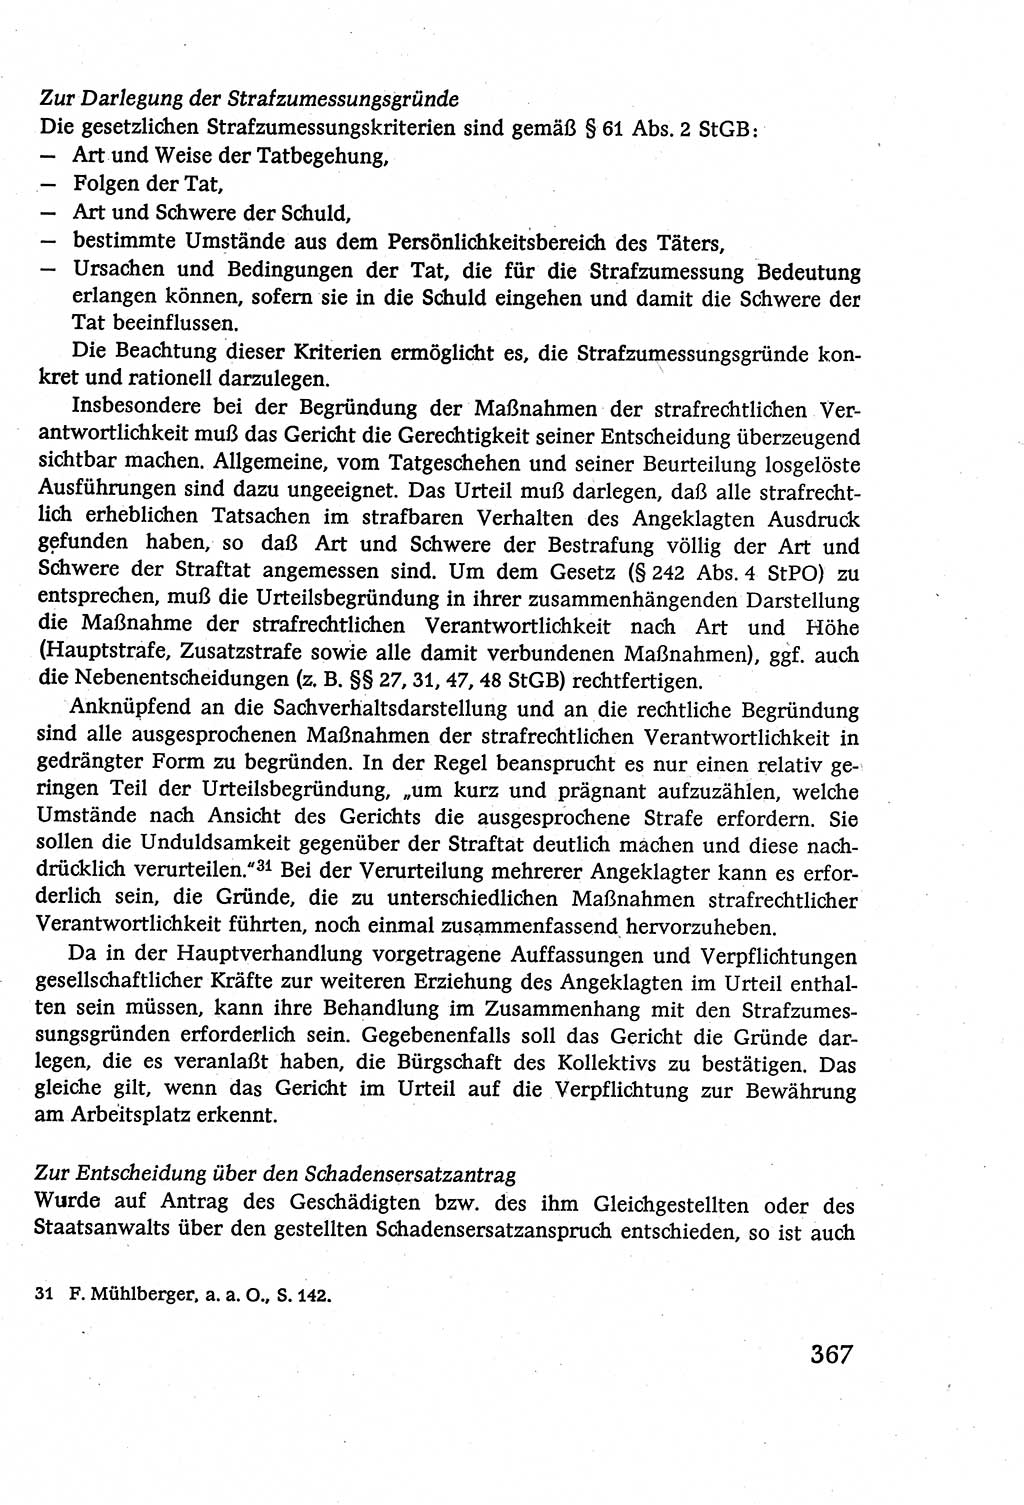 Strafverfahrensrecht [Deutsche Demokratische Republik (DDR)], Lehrbuch 1977, Seite 367 (Strafverf.-R. DDR Lb. 1977, S. 367)